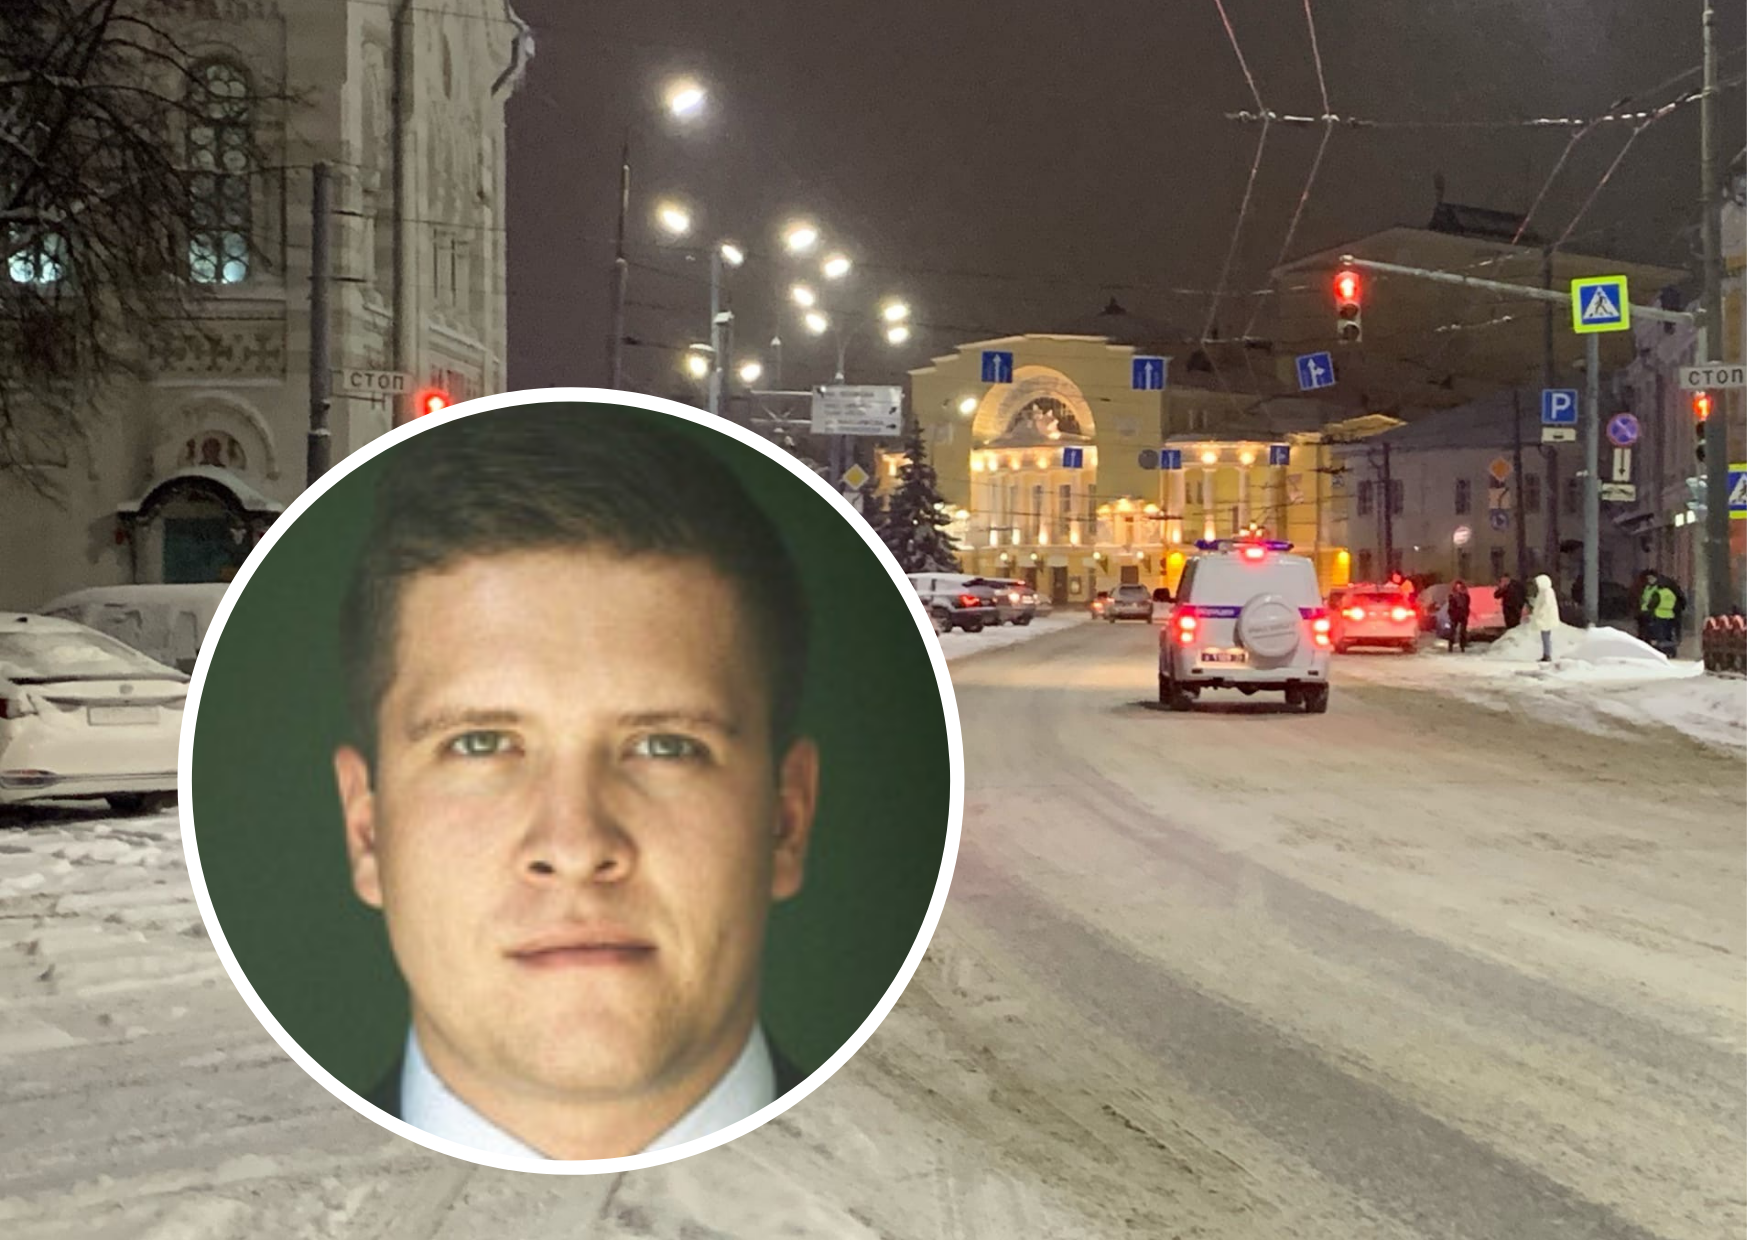 Ярославского депутата арестовали по подозрению в наркобизнесе